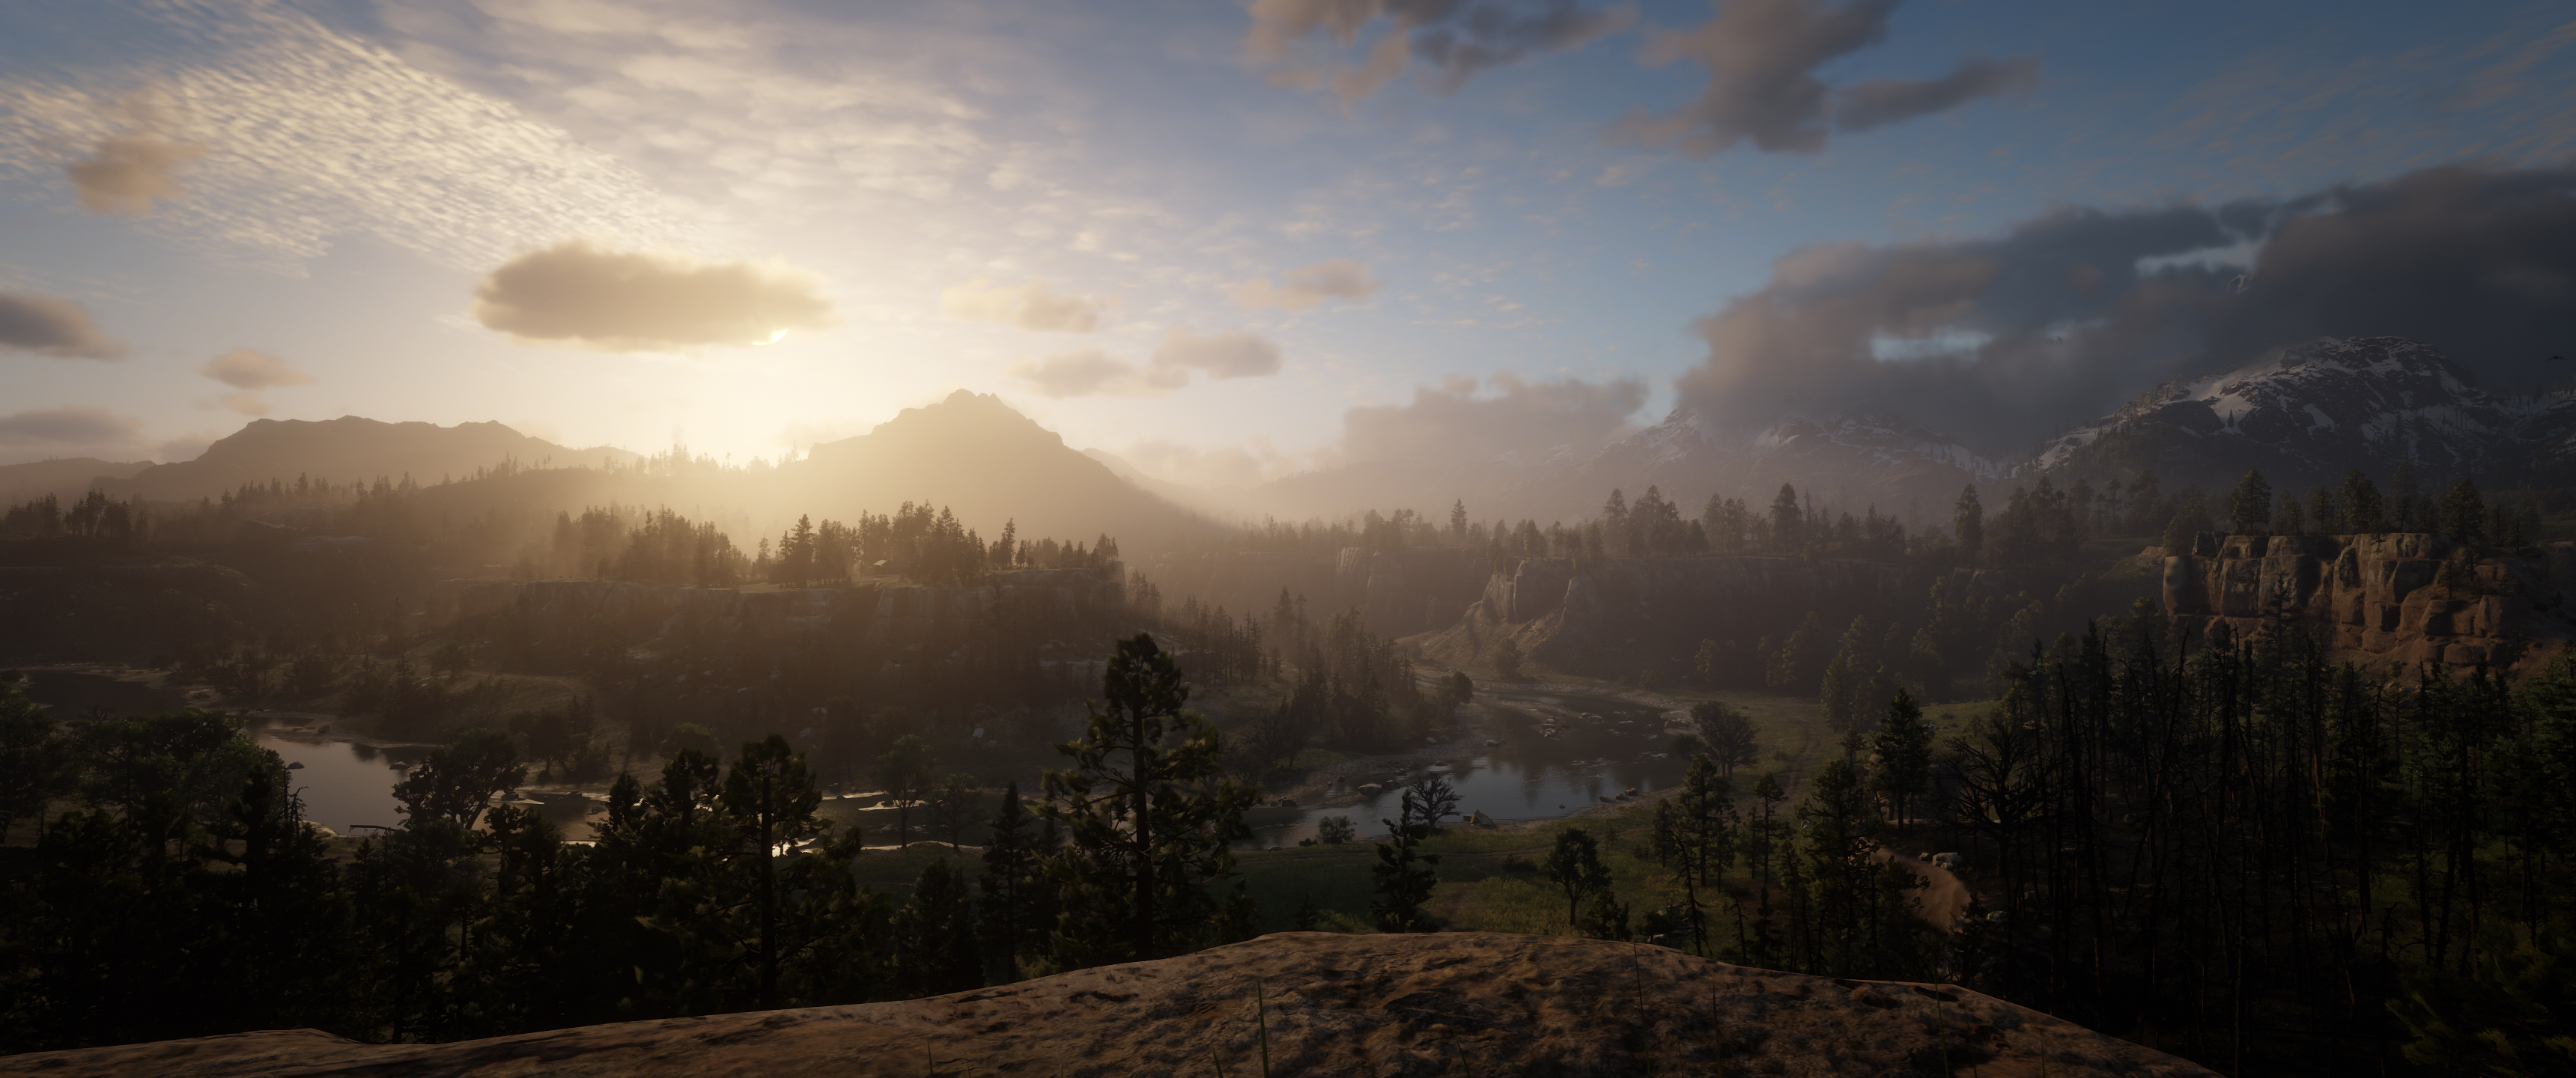 General 3440x1440 Red Dead Redemption 2 Rockstar Games screen shot video game landscape landscape sunset